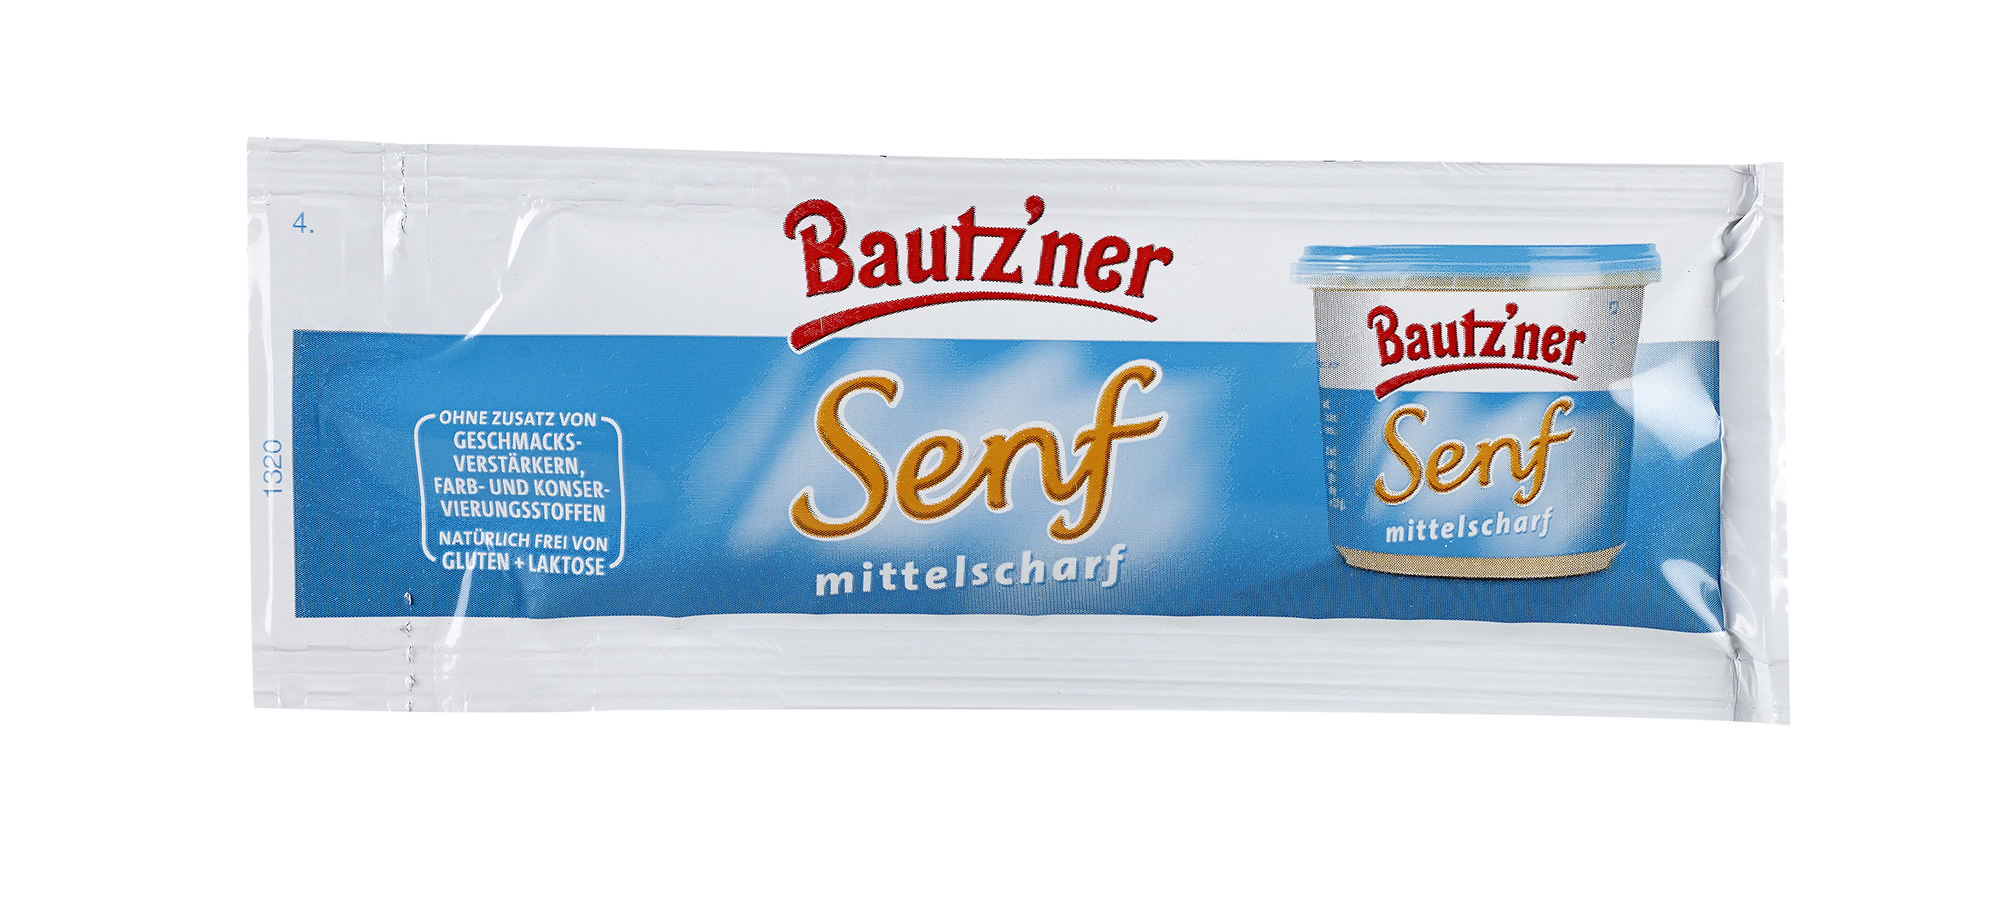 Bautzner Senf mittelscharf 10 ml